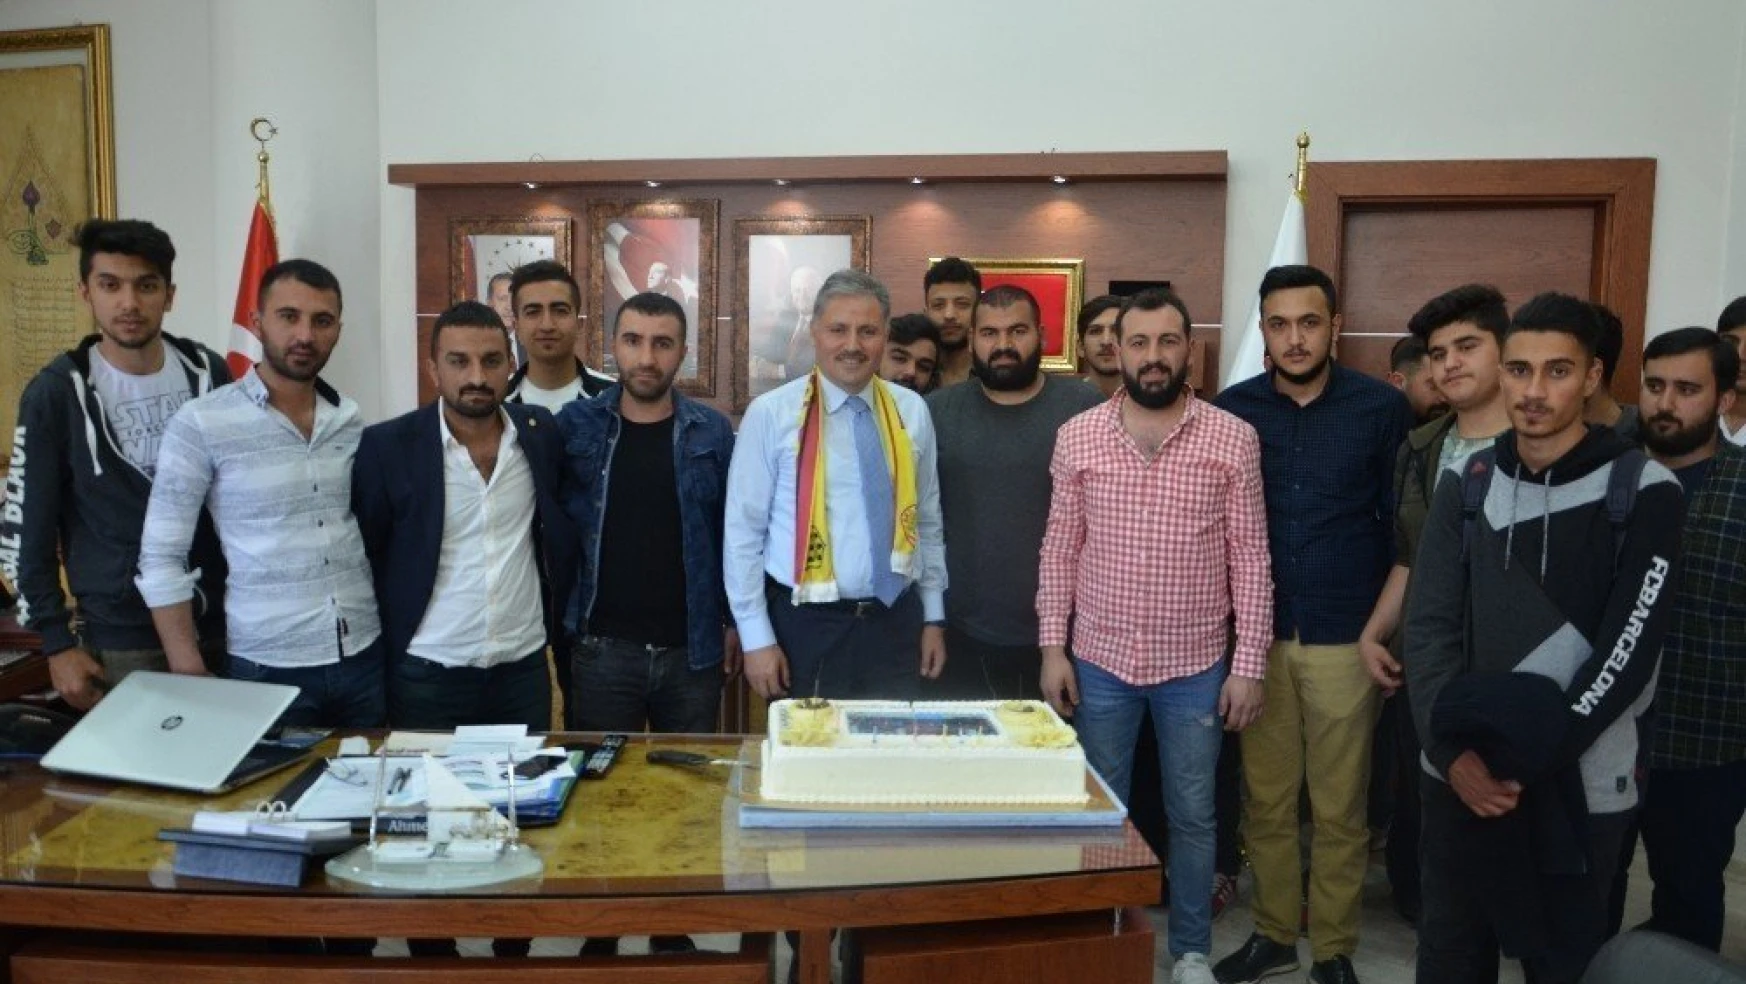 Taraftarlardan Başkan Çakır'a sürpriz doğum günü kutlaması
